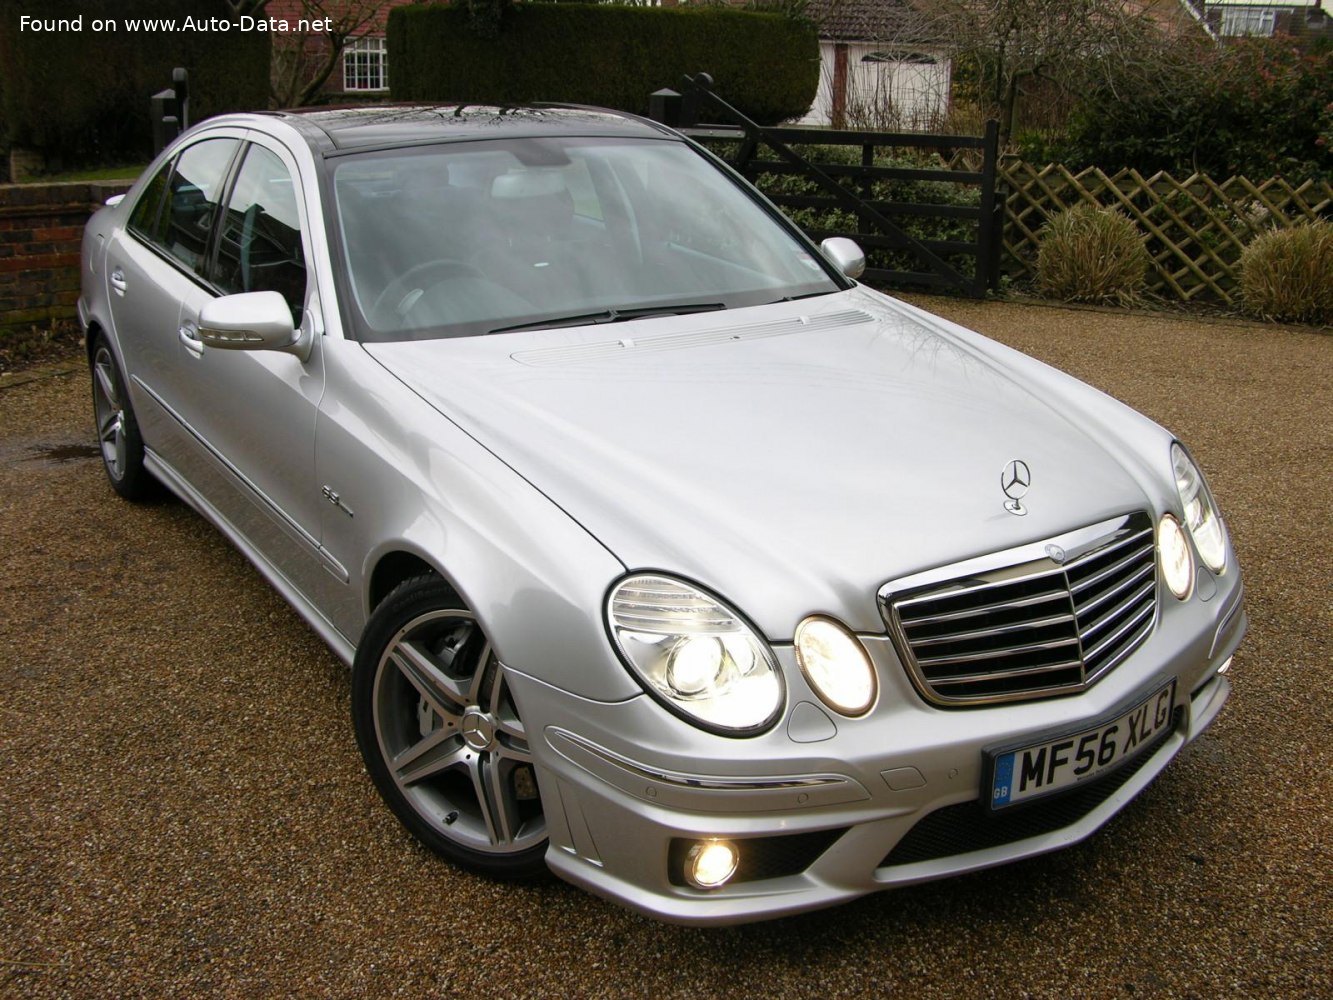 https://www.auto-data.net/images/f99/Mercedes-Benz-E-class-W211-facelift-2006_2.jpg